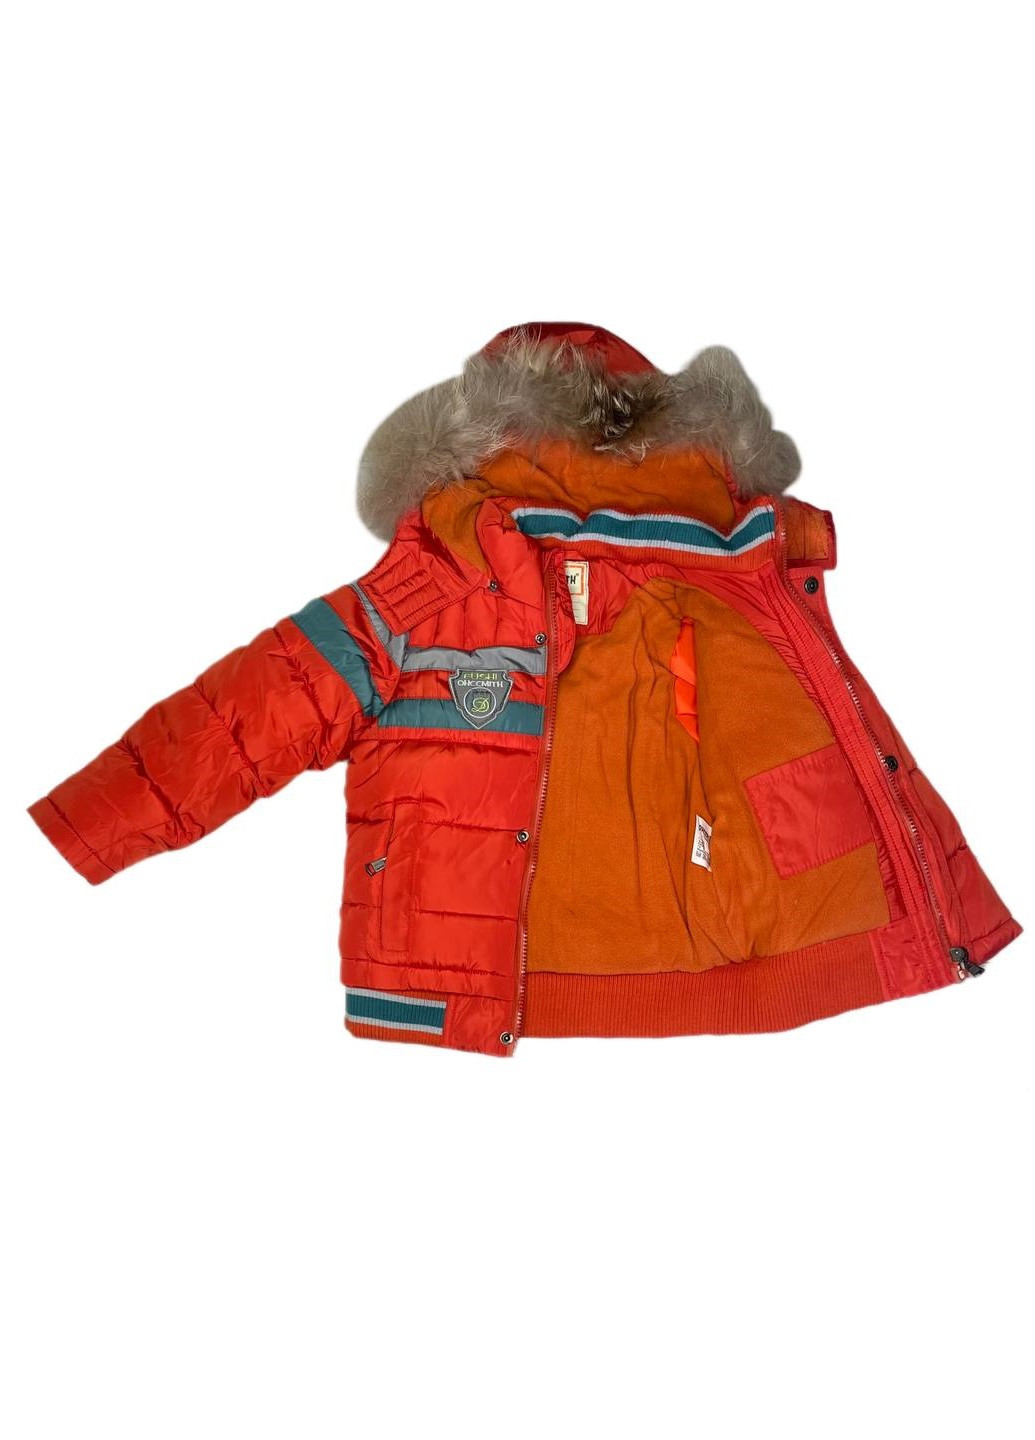 Красная зимняя куртка Ohccmith